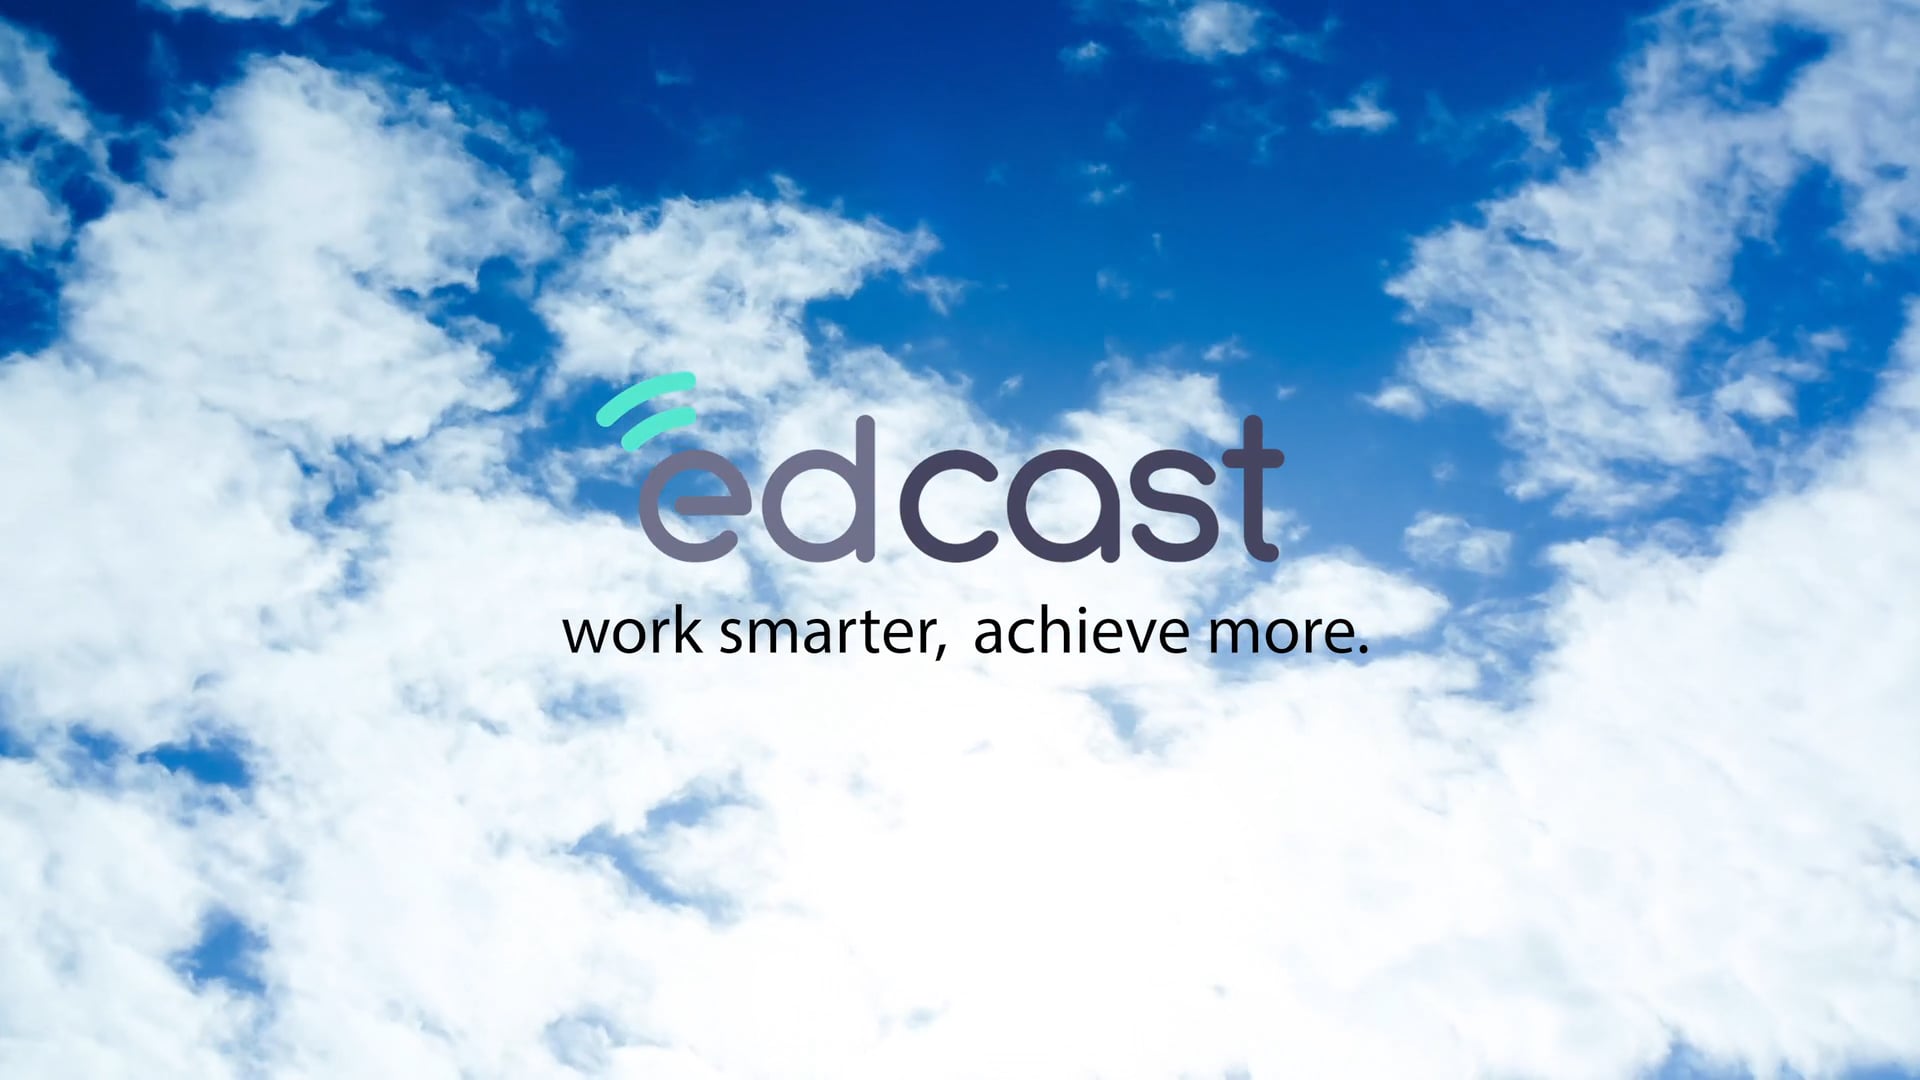 EdCast Corporate Video 2019